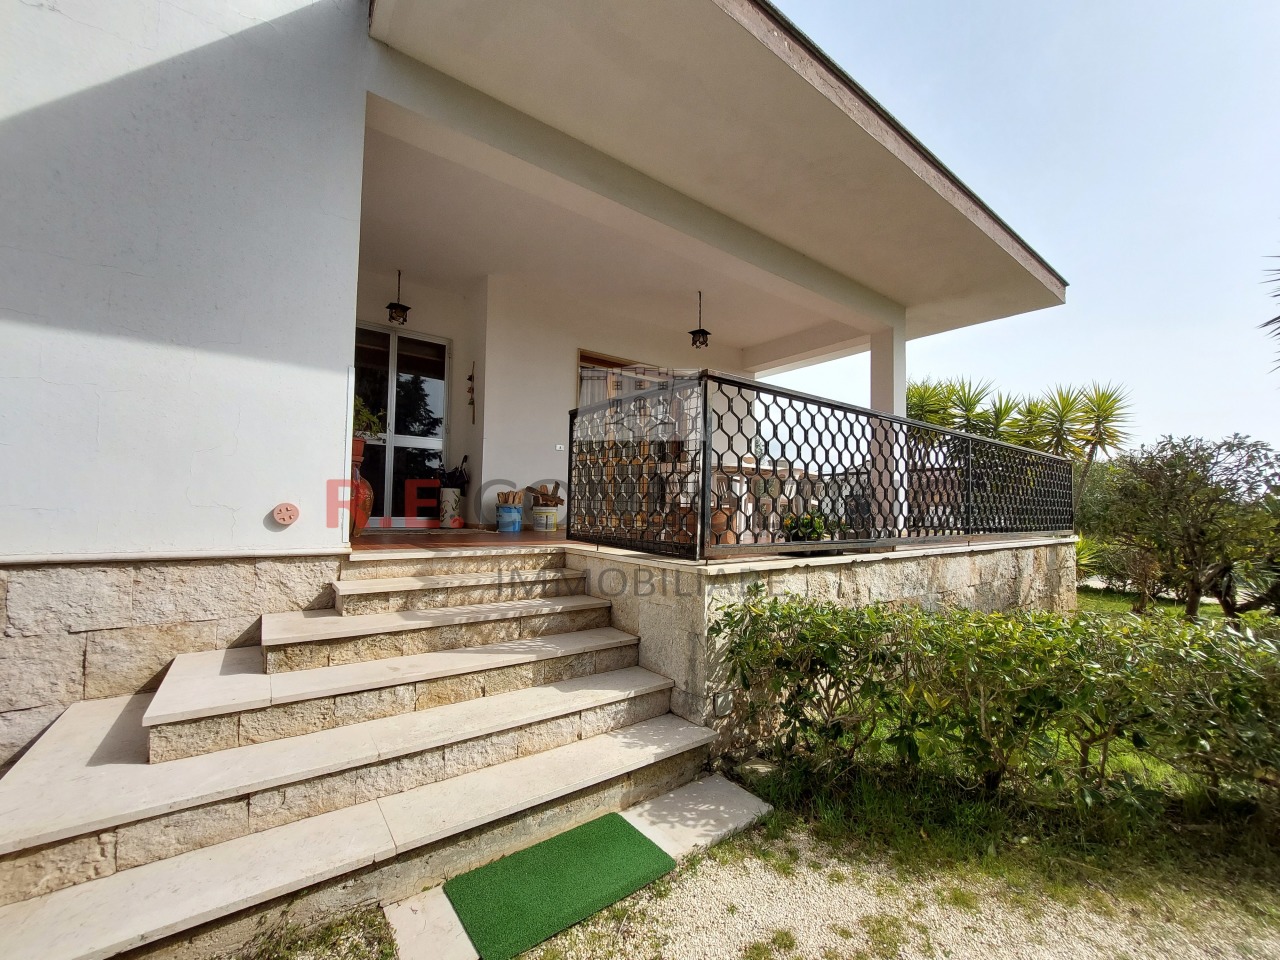 Villa in vendita a Crispiano, 7 locali, prezzo € 169.000 | PortaleAgenzieImmobiliari.it